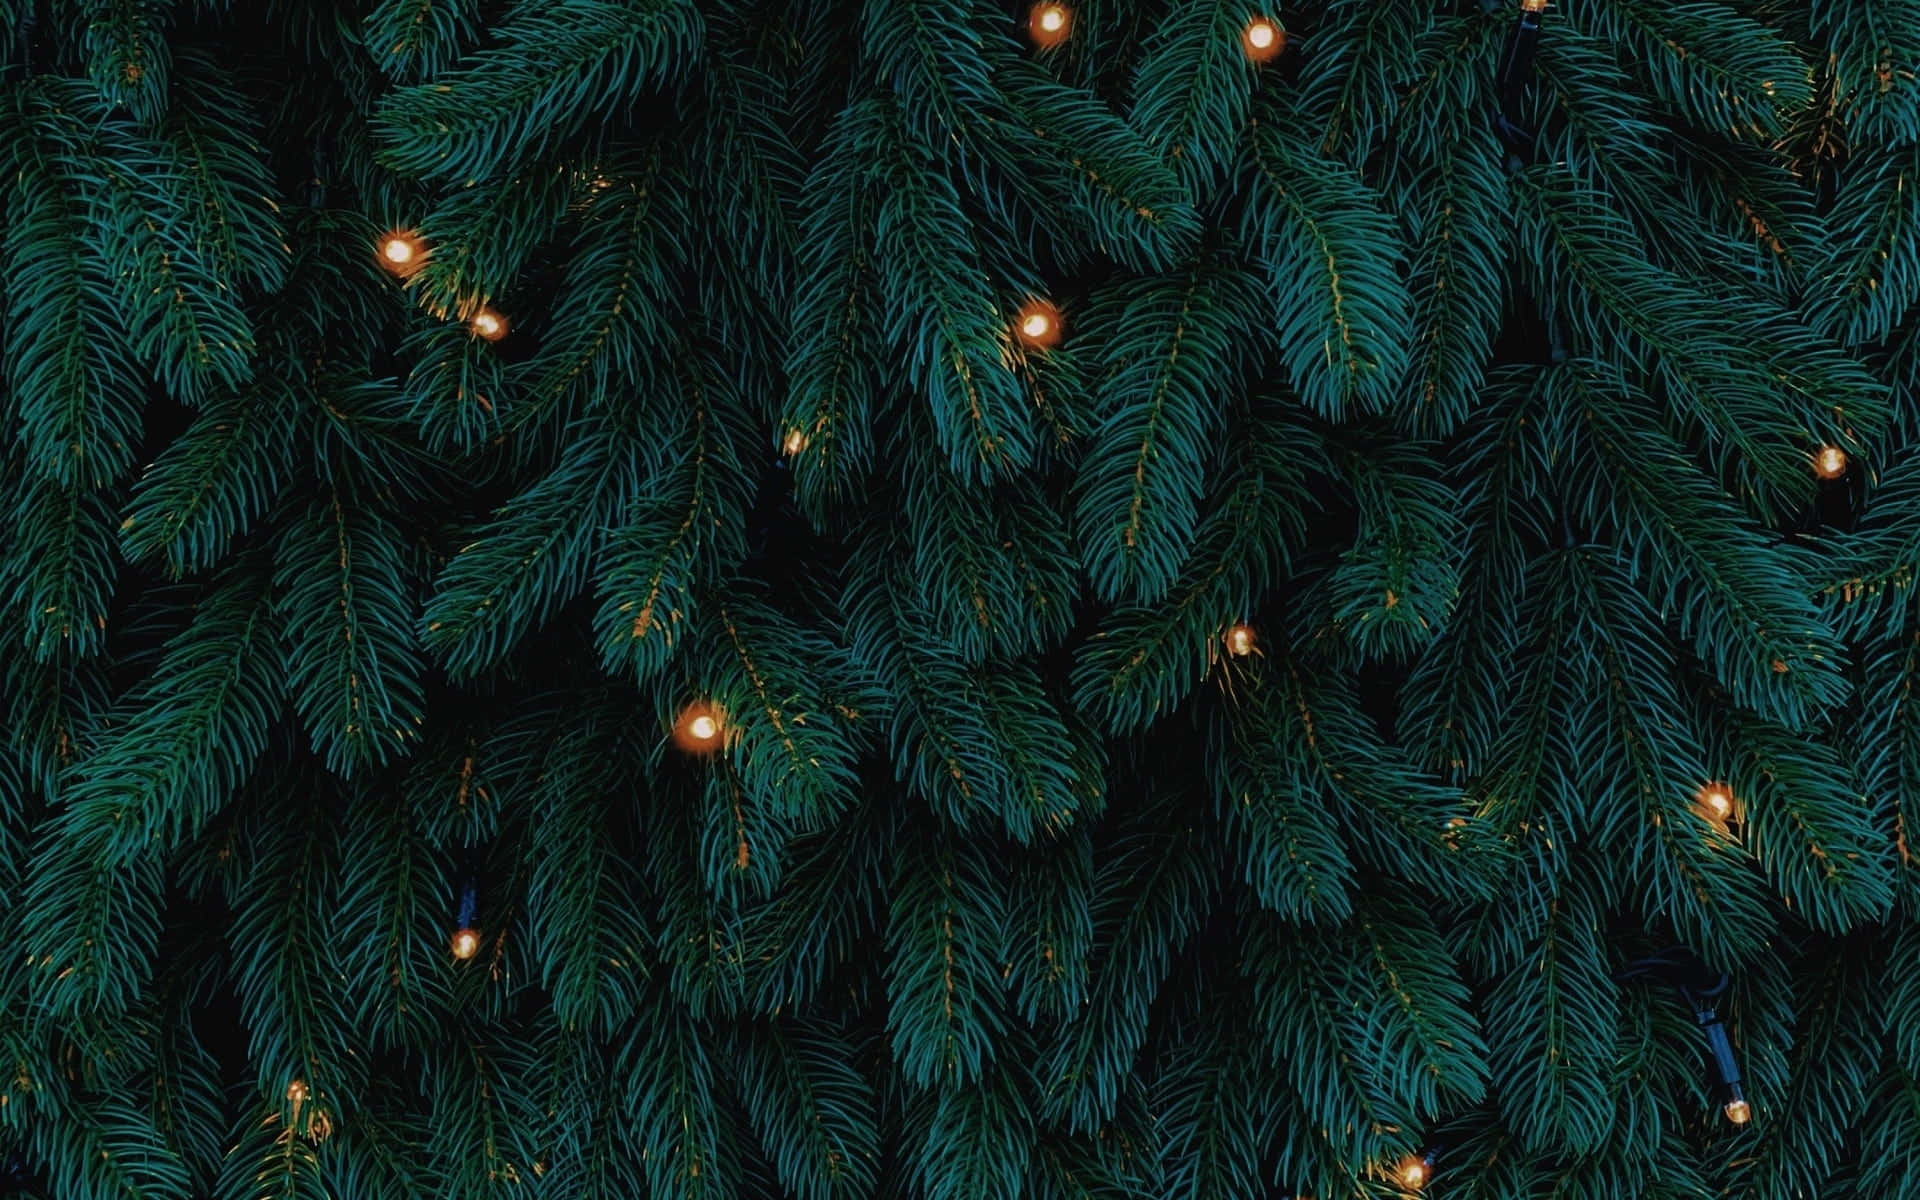 Fondode Pantalla De Árbol De Navidad Con Luces